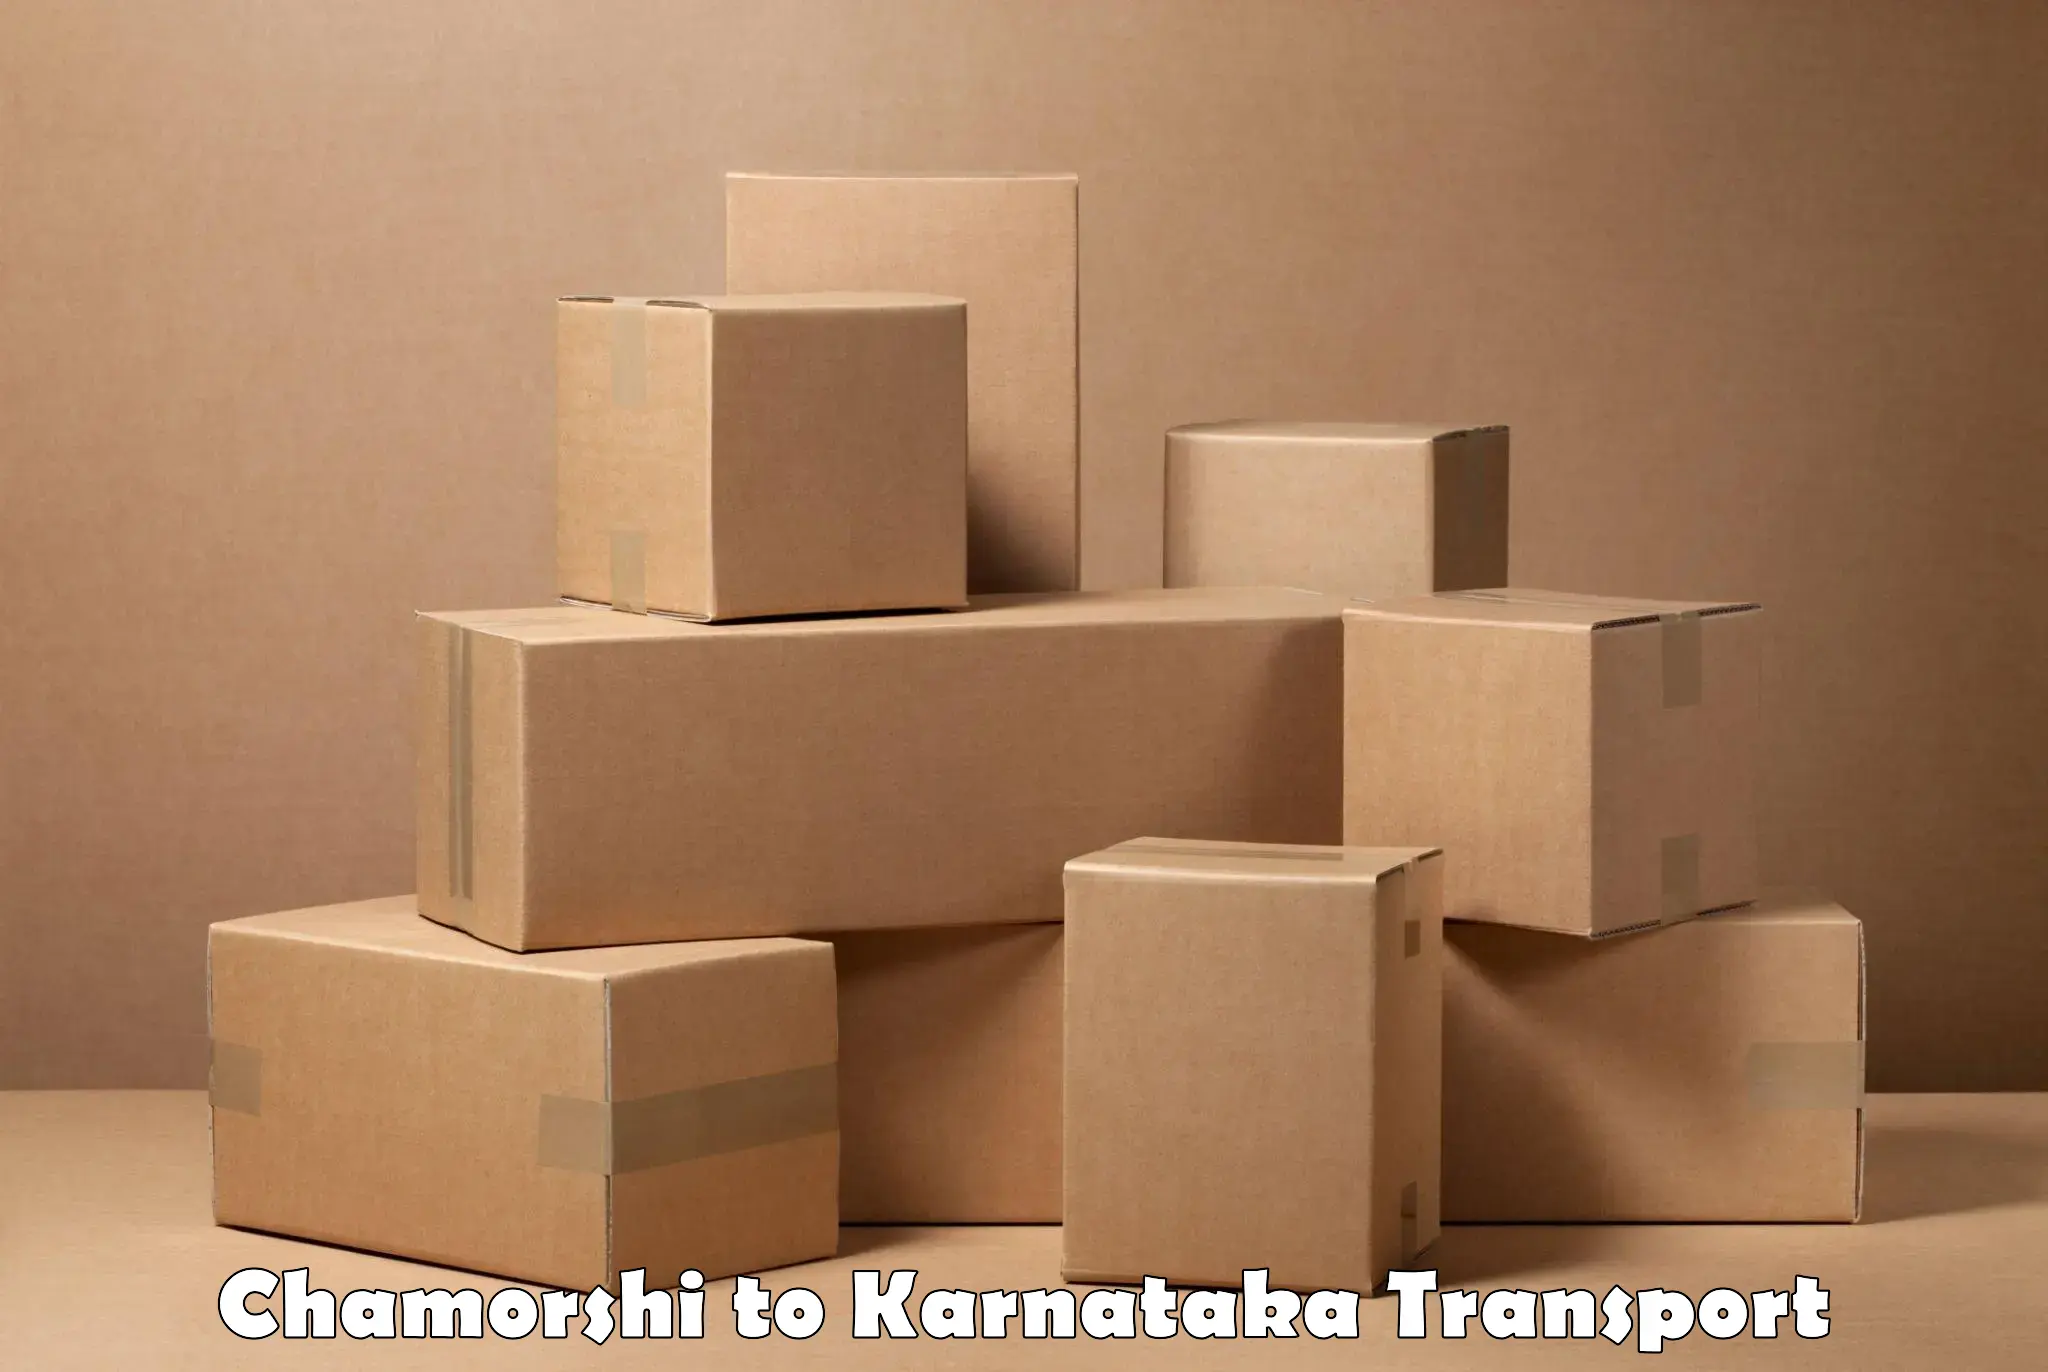 Daily transport service Chamorshi to Krishnarajanagara